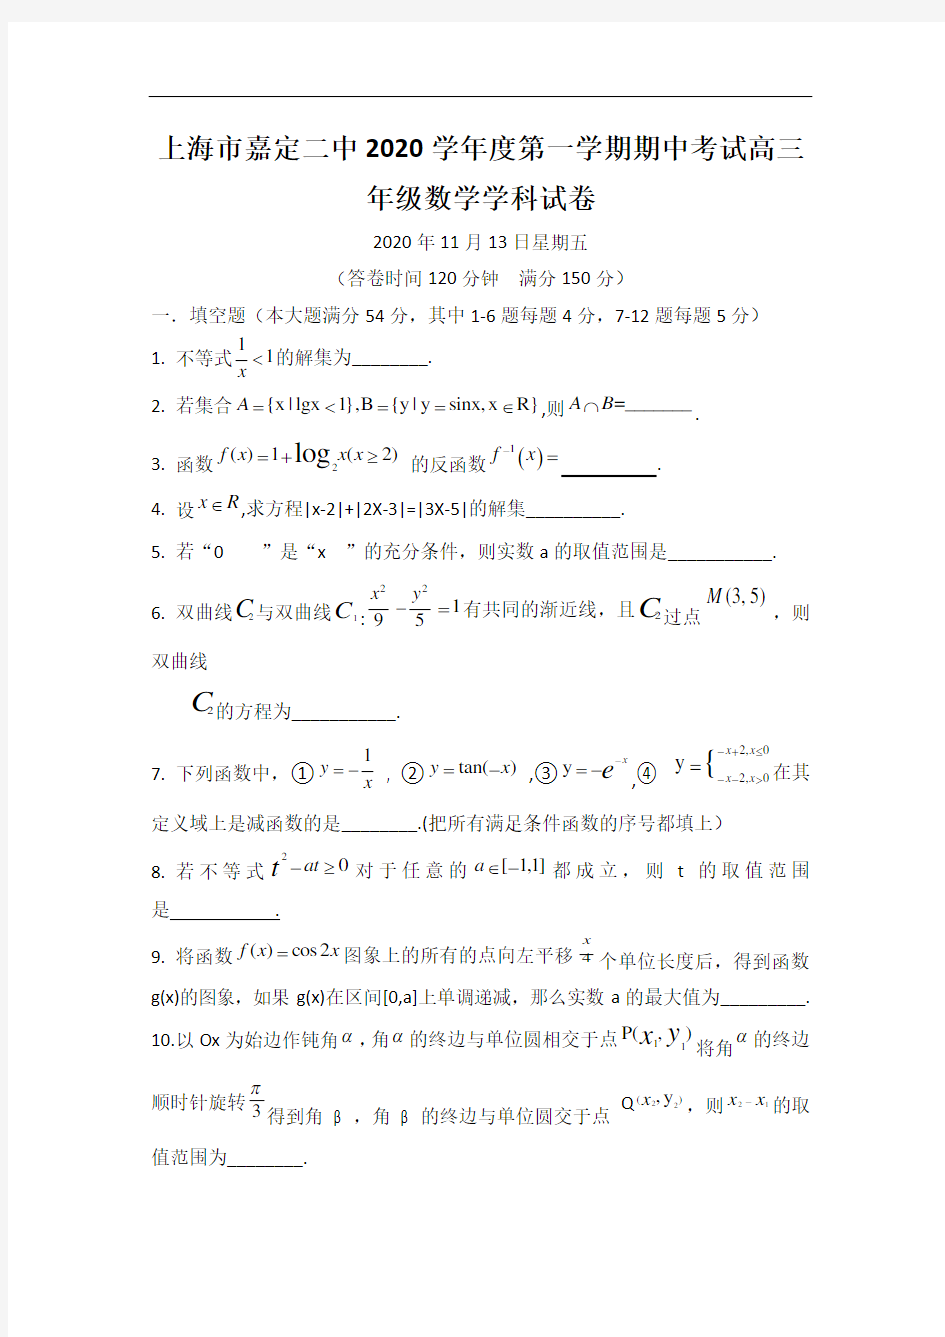 上海市嘉定二中2020学年度第一学期期中考试高三年级数学学科试卷